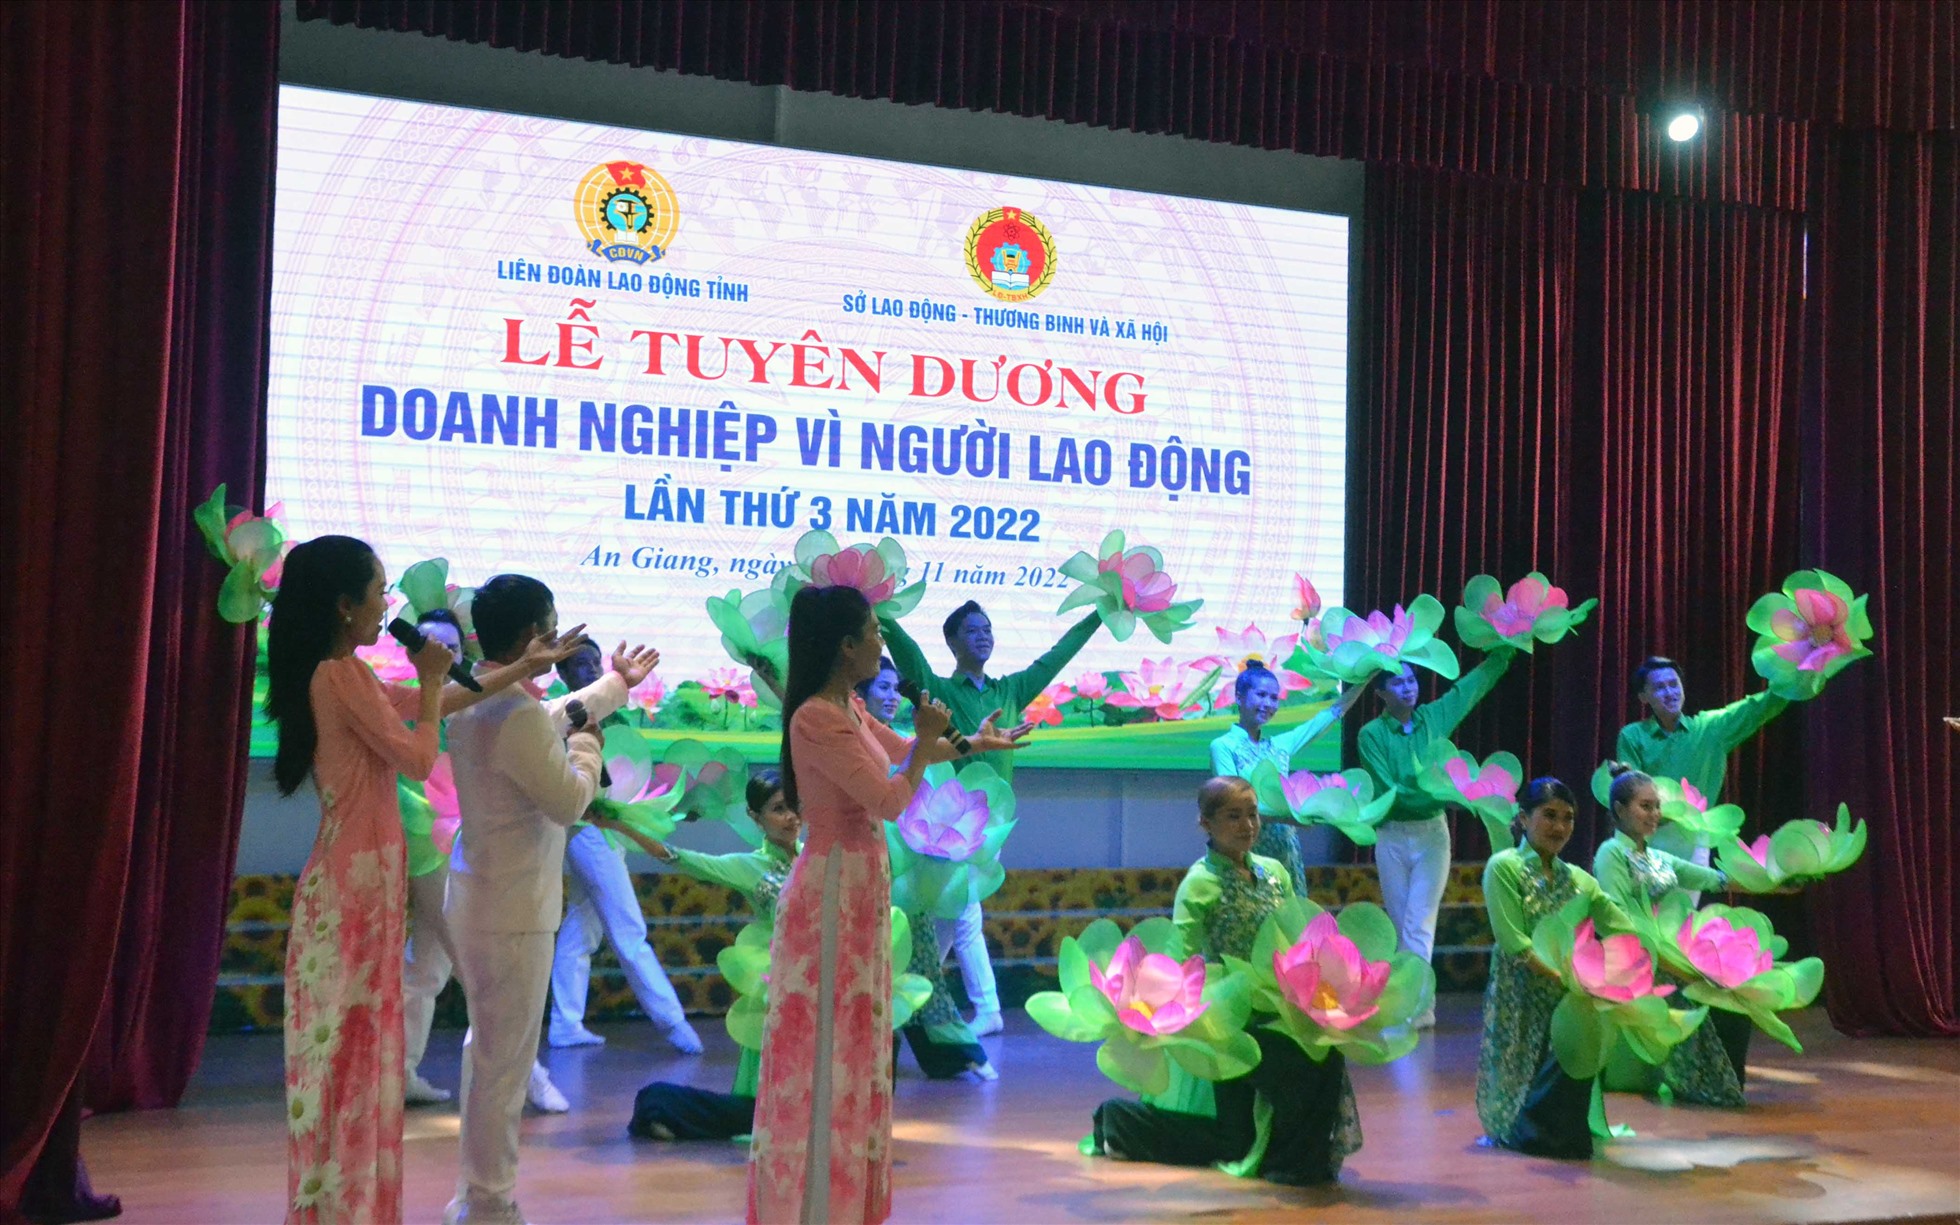 Văn nghệ chào mừng trước khi vào chương trình chính của buổi lễ tuyên dương Doanh nghiệp vì người lao động tỉnh An Giang lần thứ 3/2022. Ảnh: LĐ